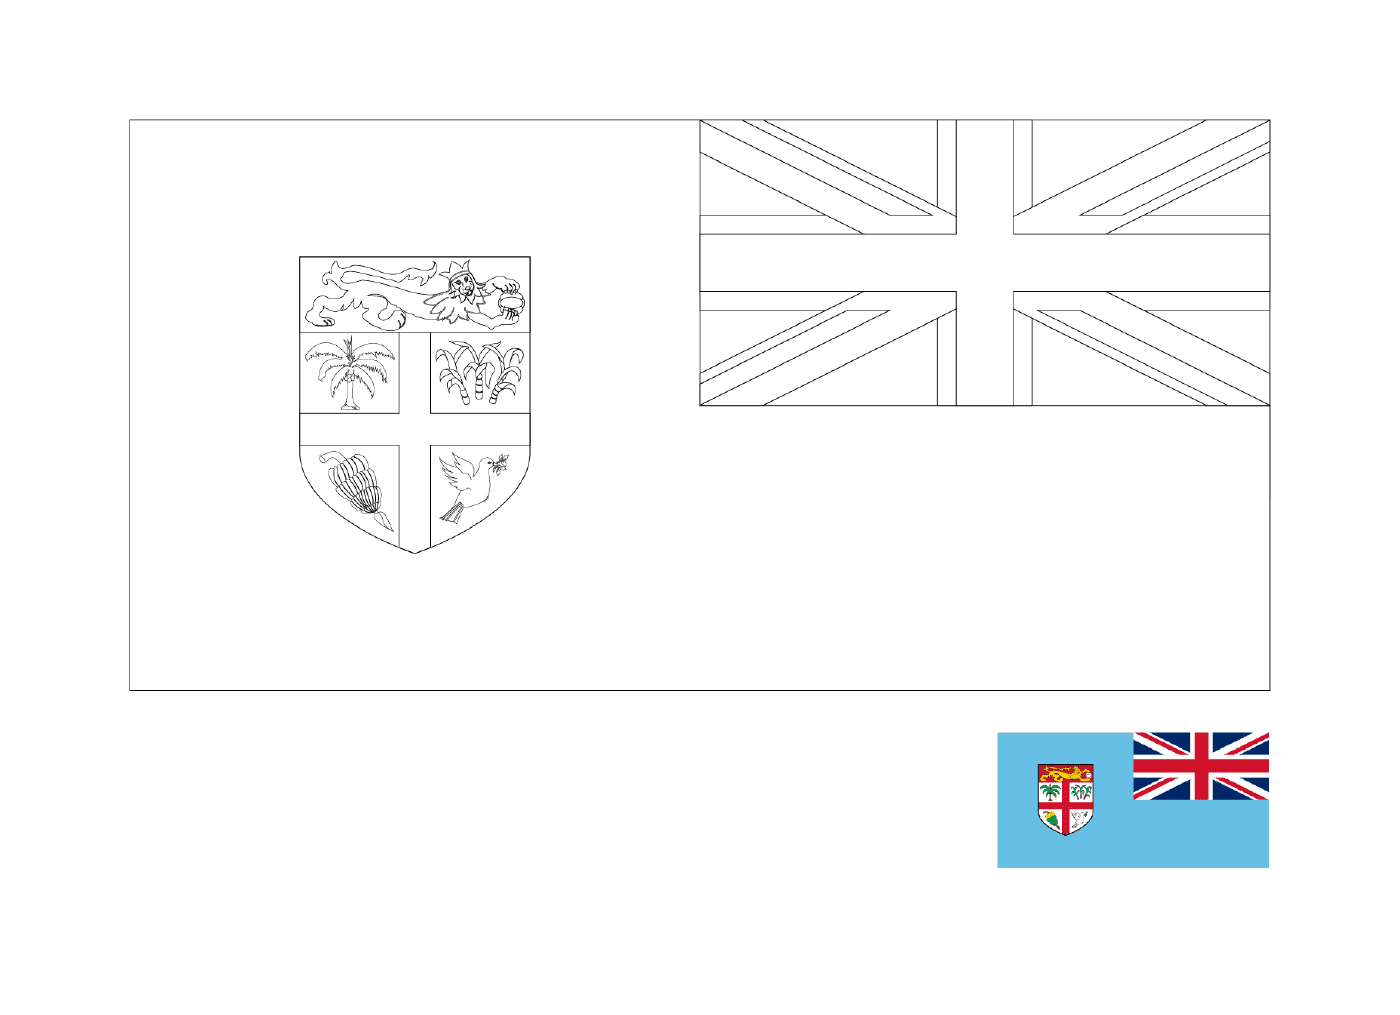  ब्रिटिश वर्जिन आइलैंड्स का झंडा 